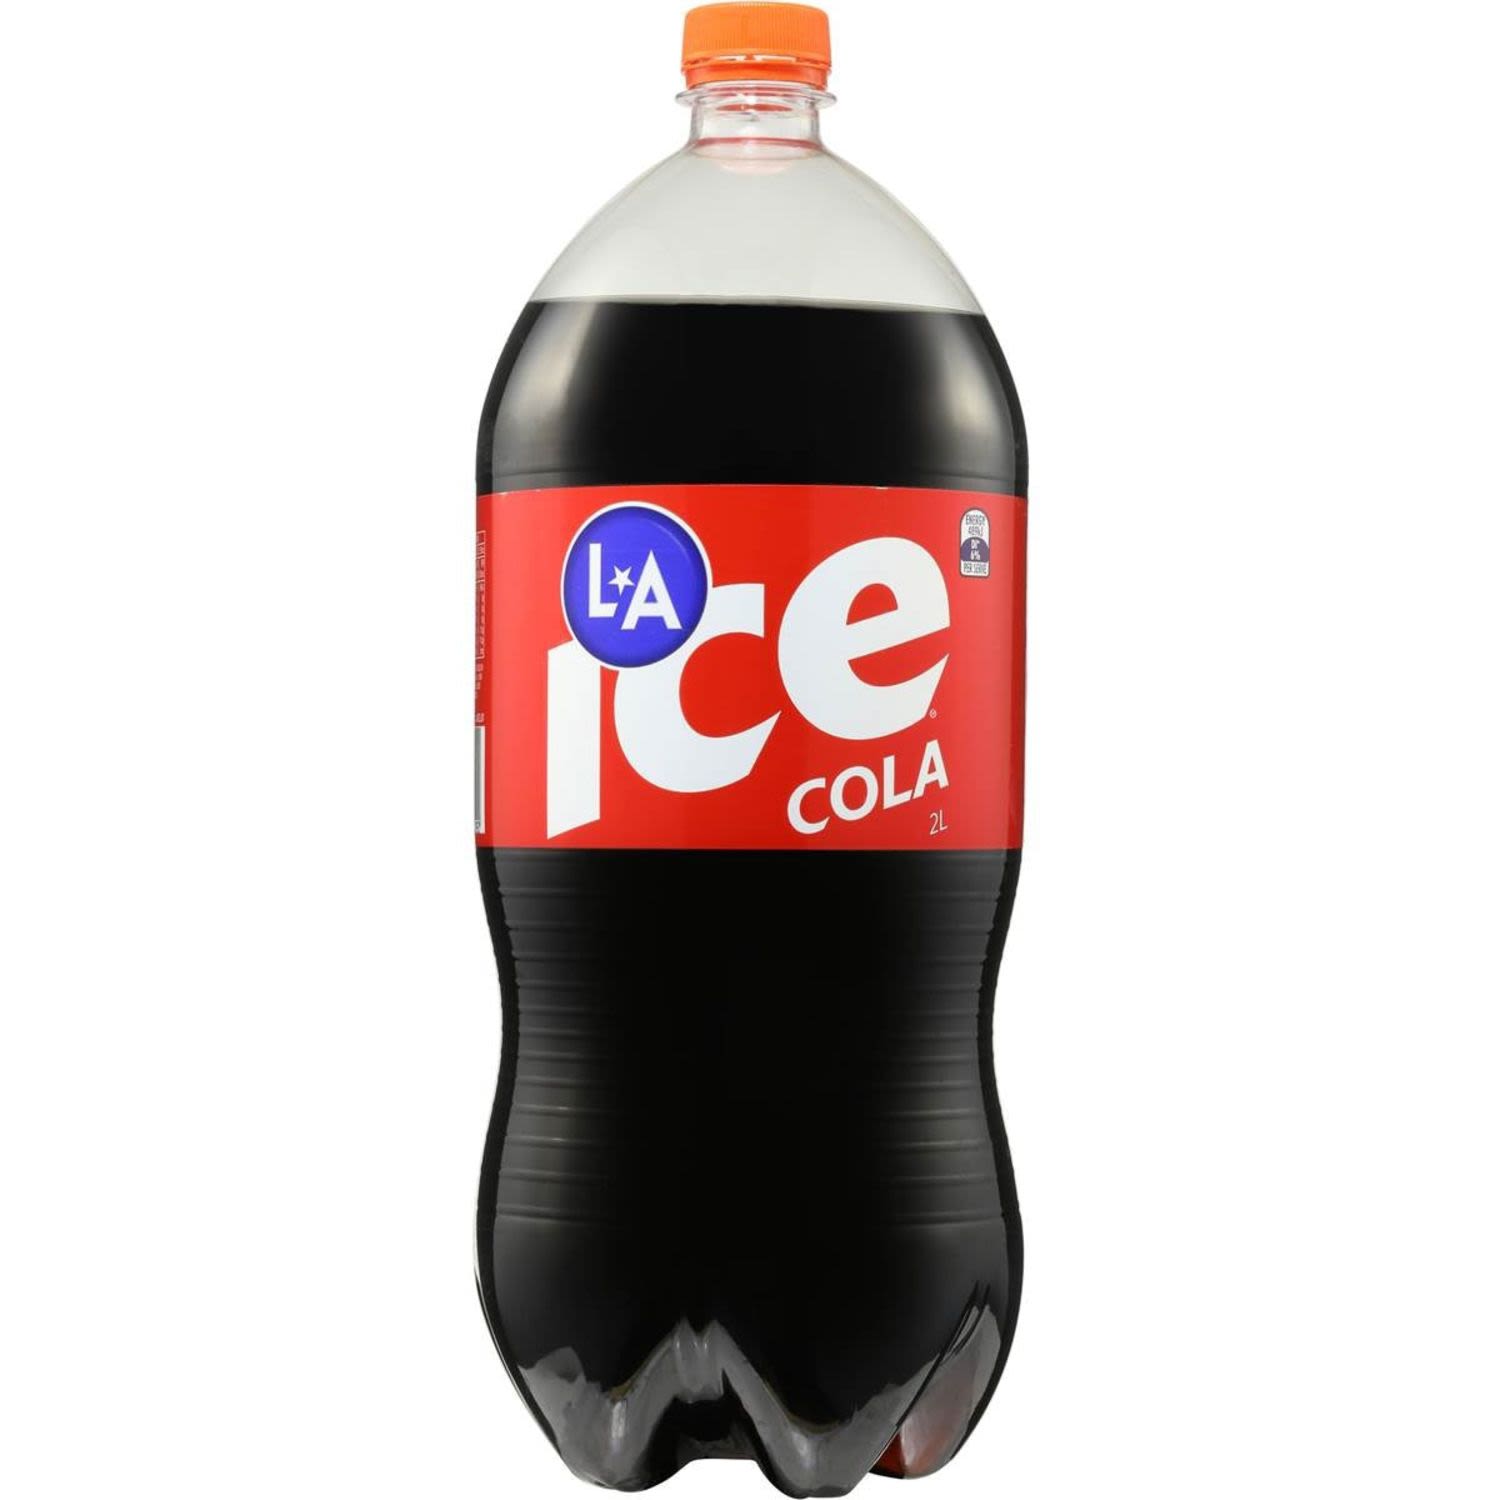 La Ice Cola Bottle, 2 Litre